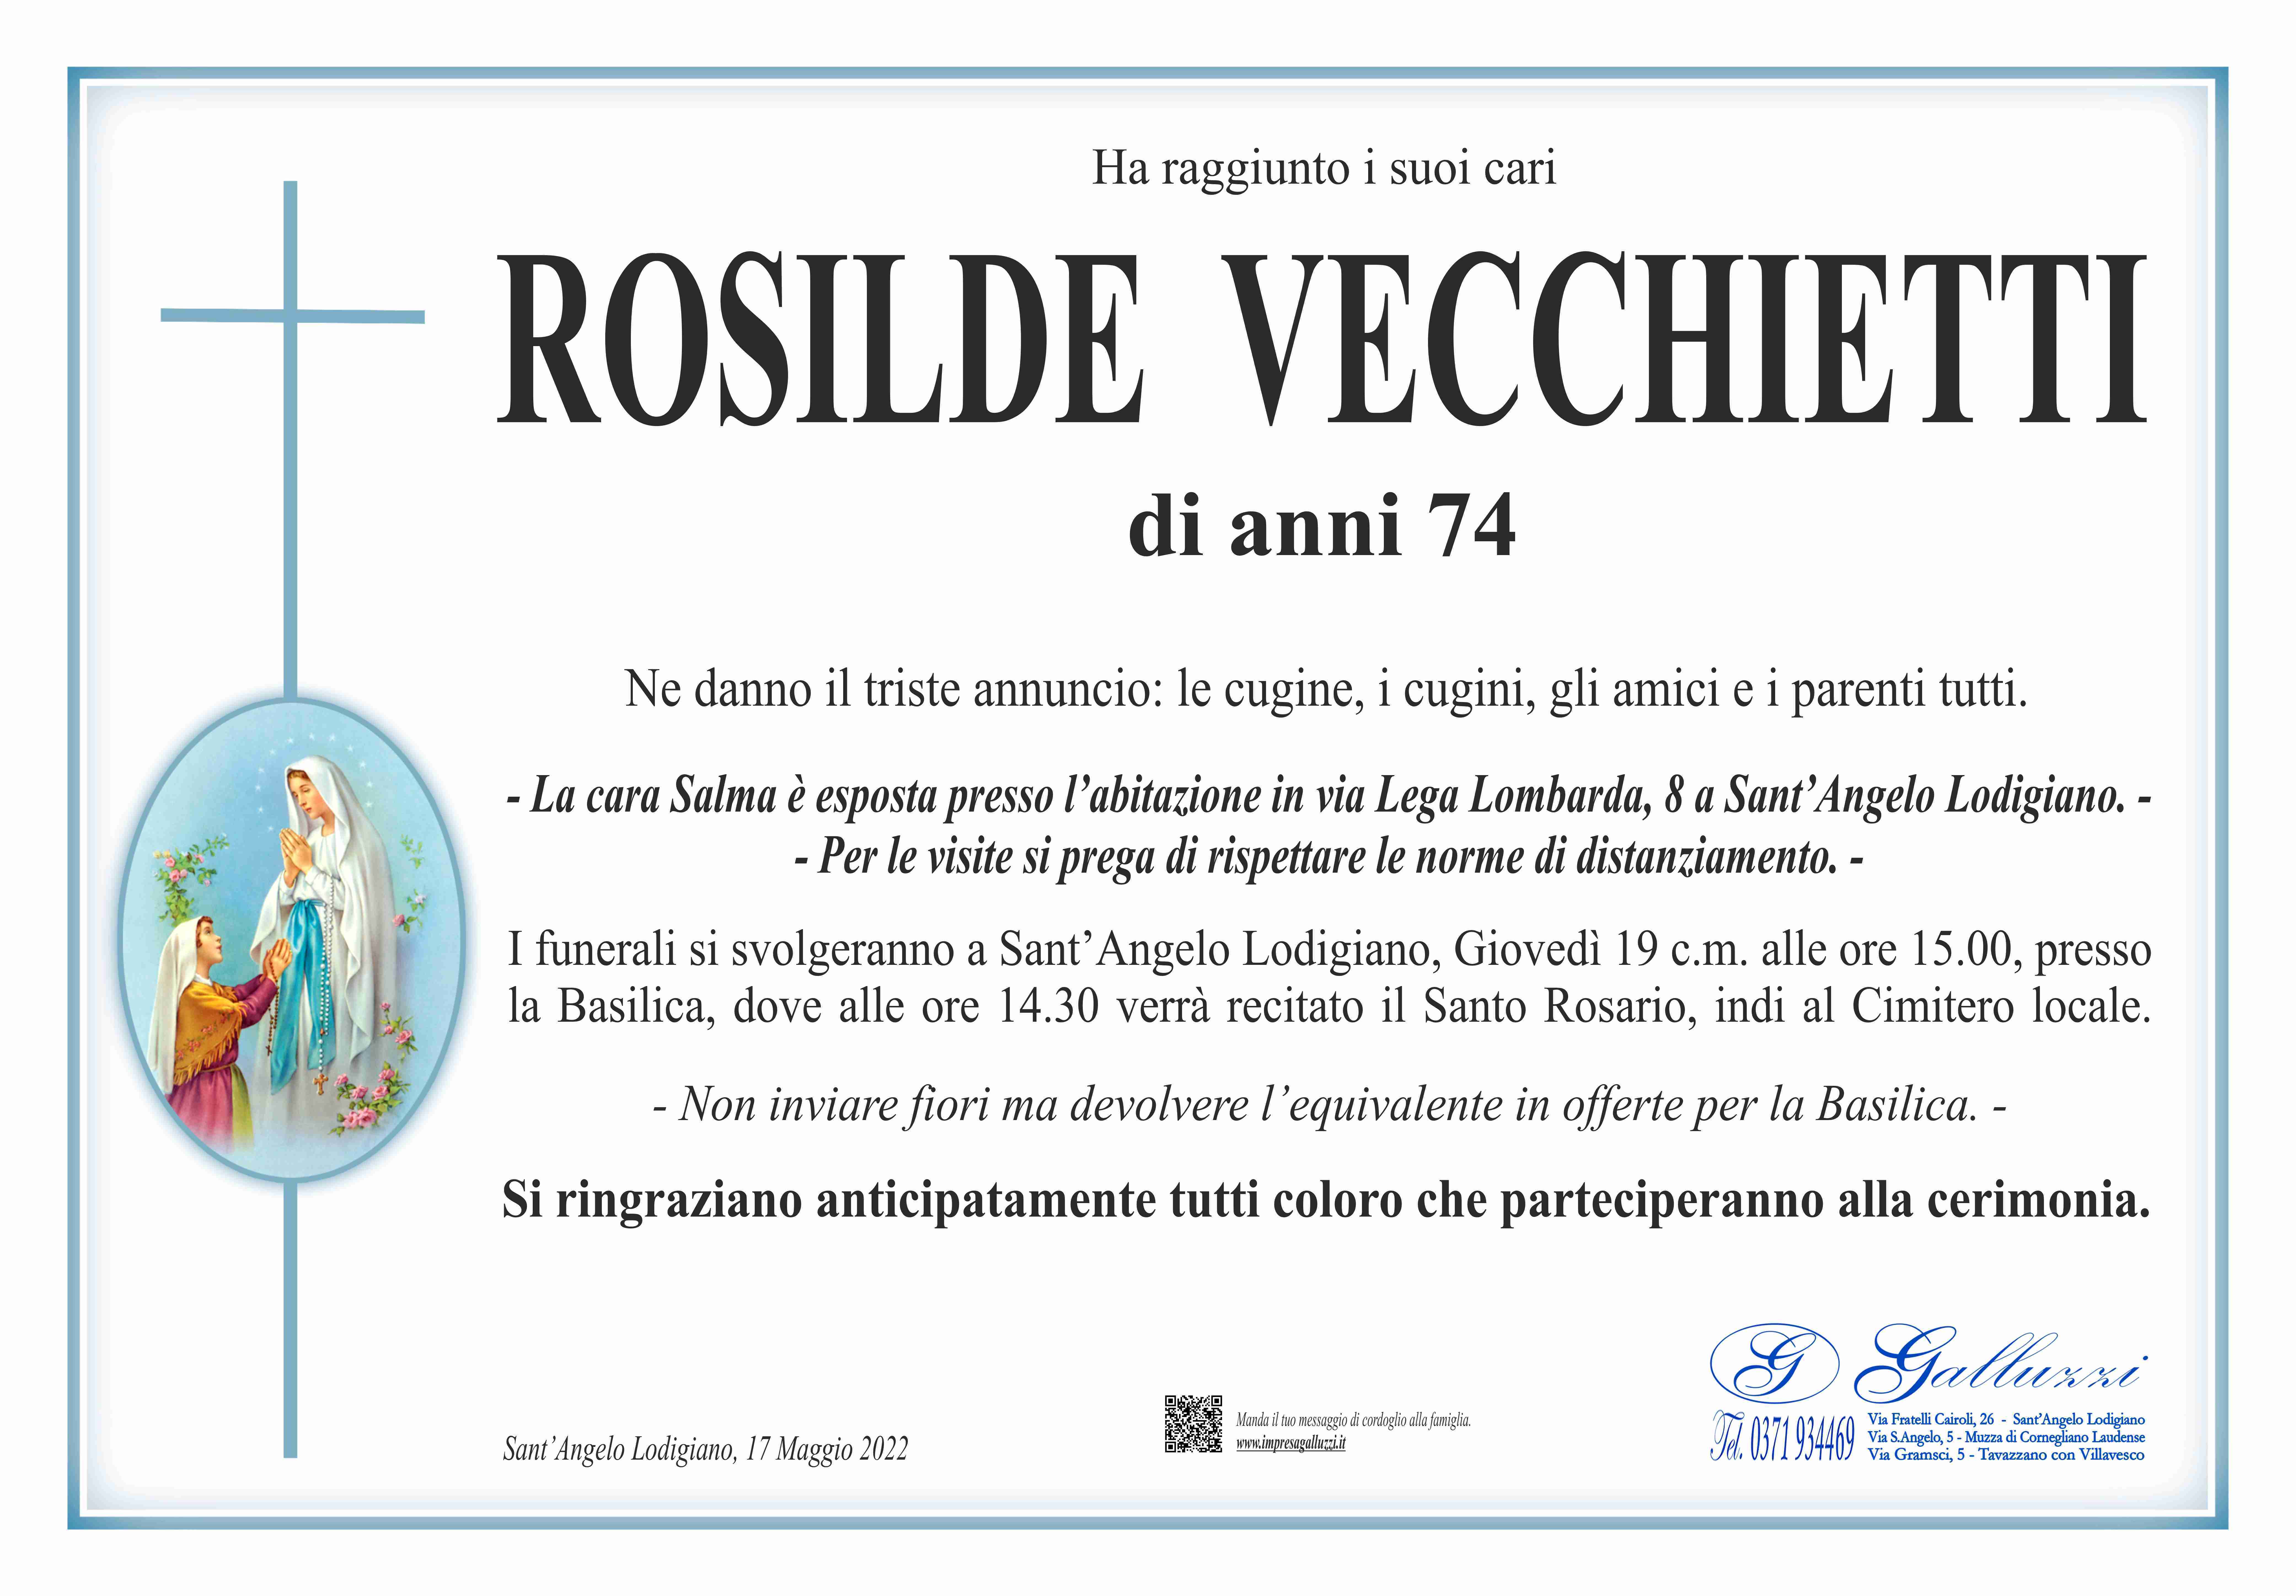 Rosilde Vecchietti